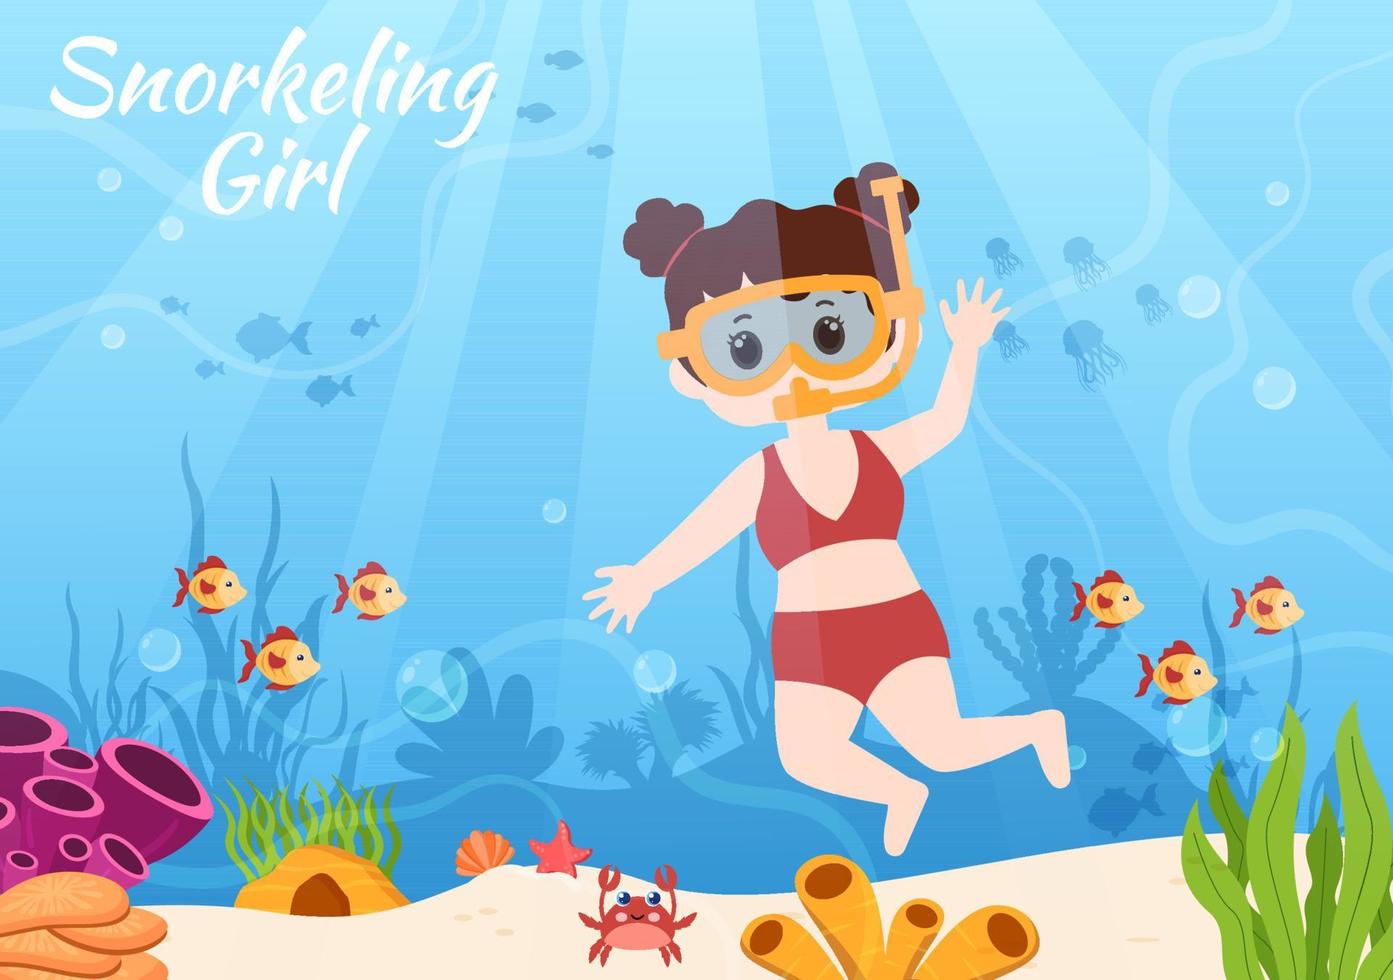 bambini che fanno snorkeling con il nuoto subacqueo esplorando il mare, la barriera corallina o il pesce nell'oceano in un'illustrazione vettoriale piatta del fumetto